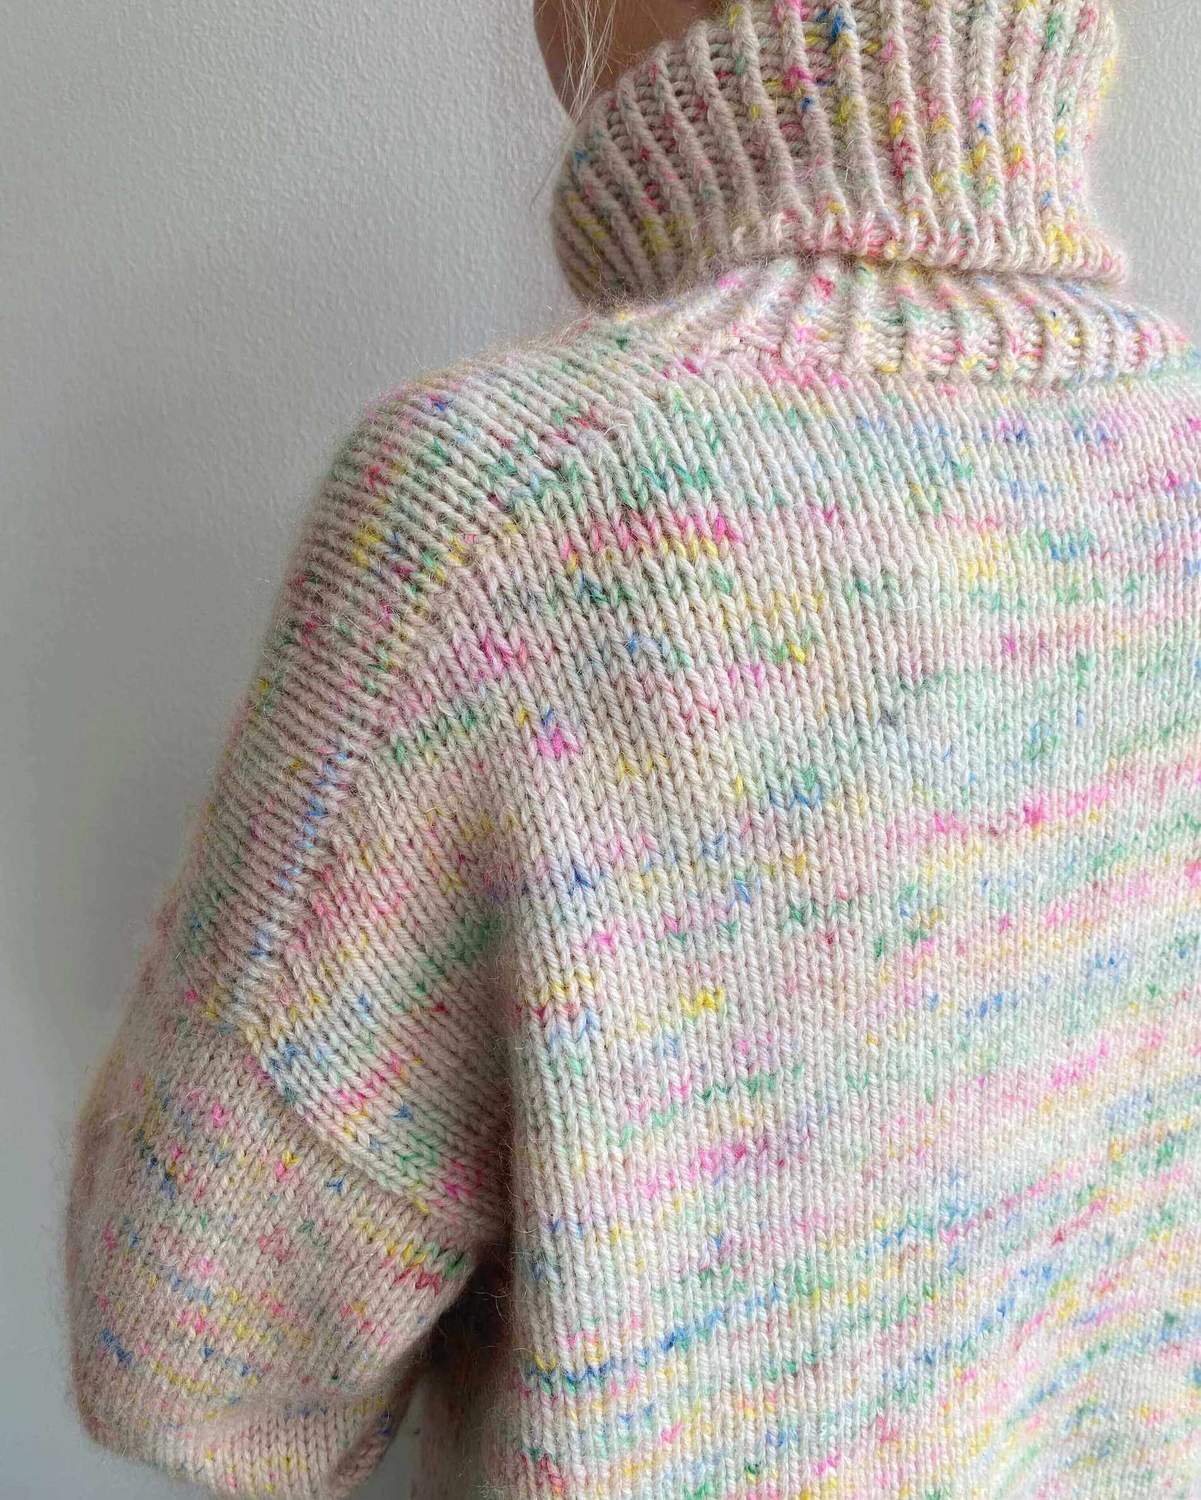 Strikkeopskrift til Wedneysday Sweater fra PetiteKnit.